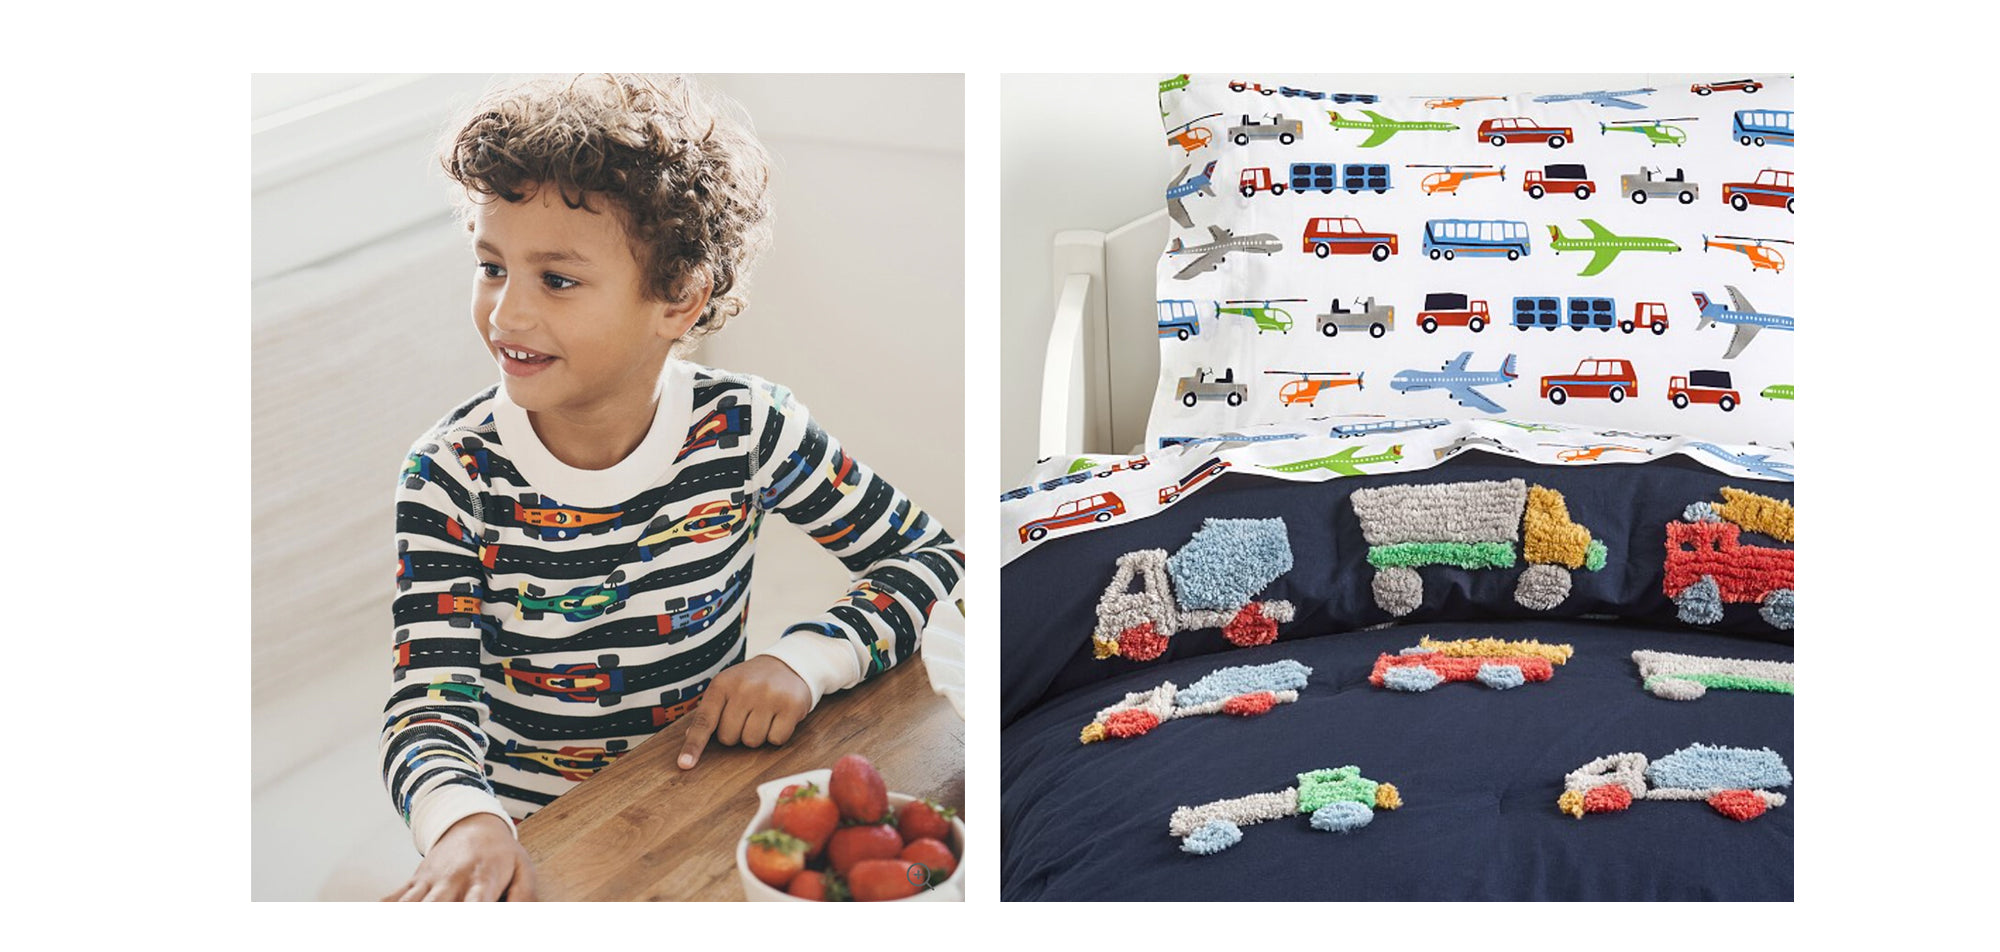 car themed bedding and pajamas ideas for boys' nursery